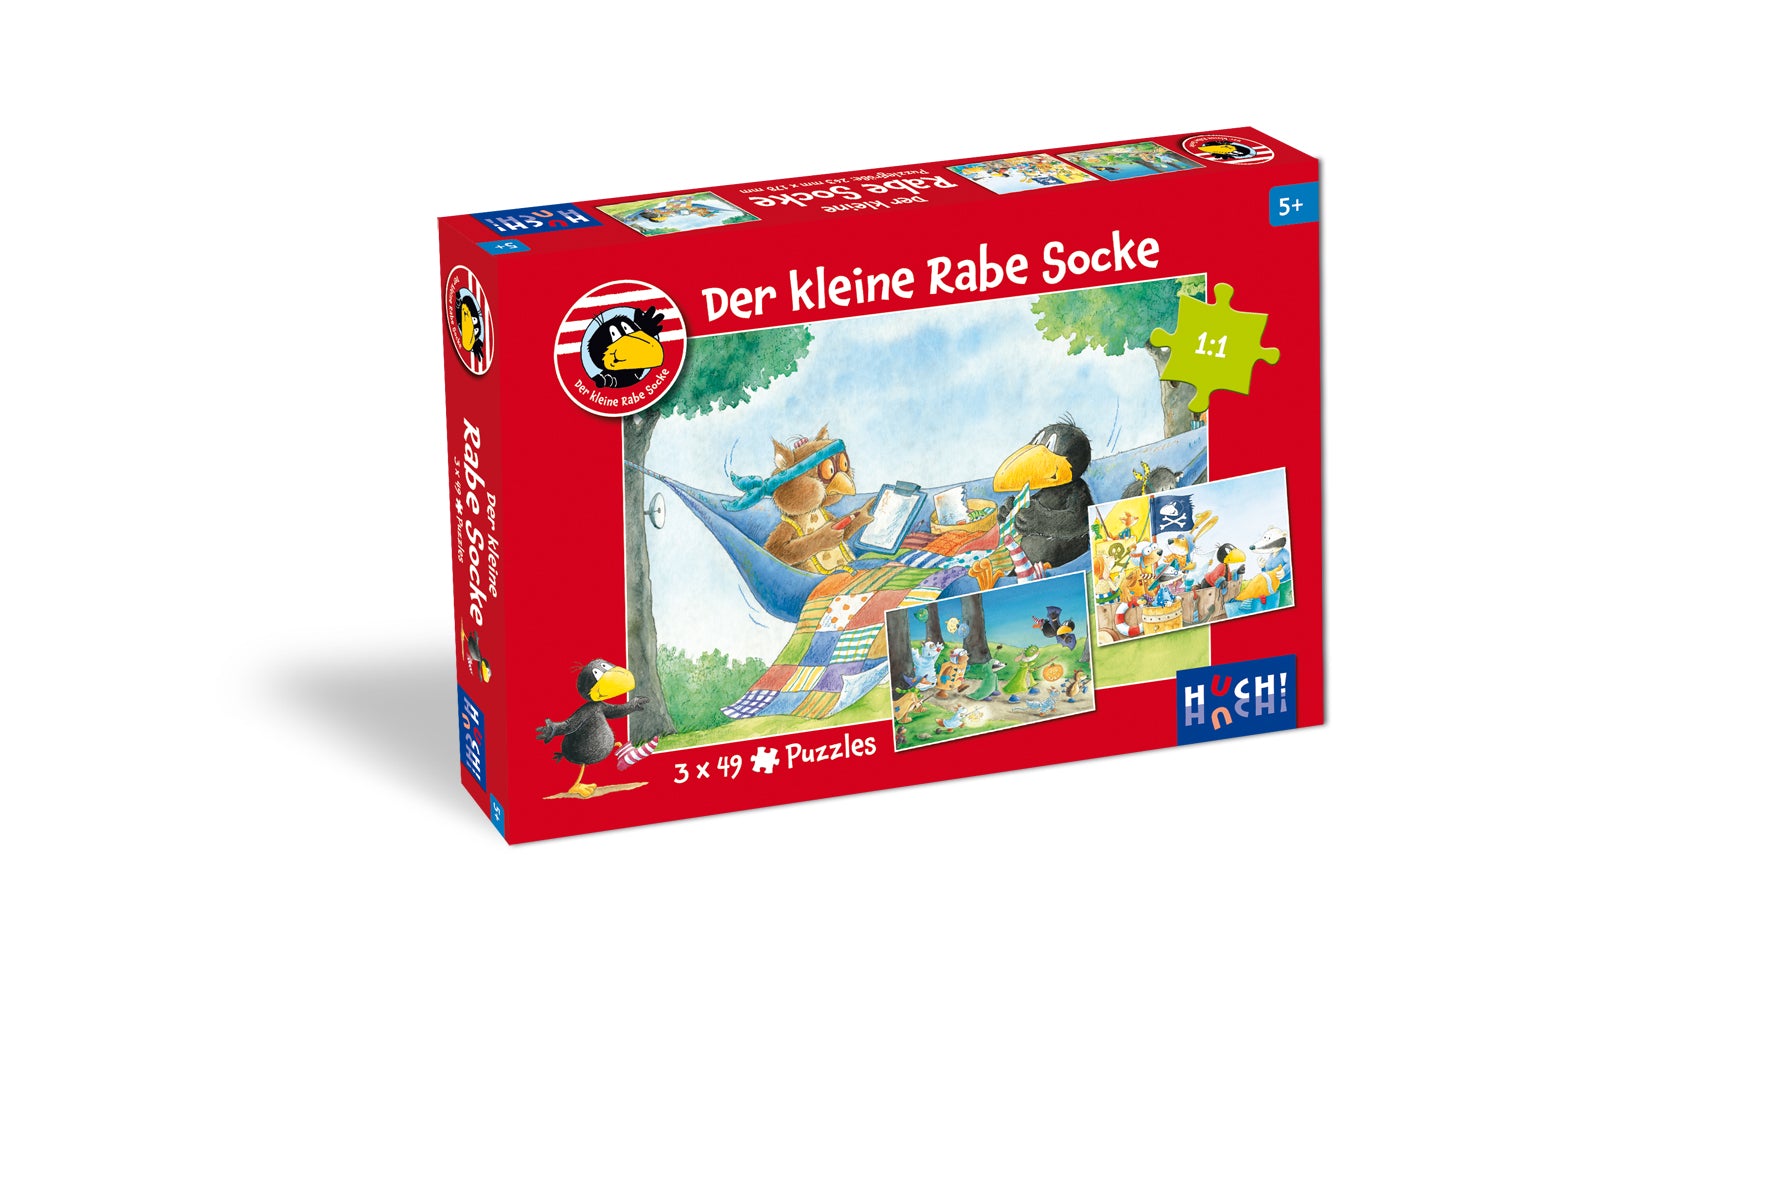 Der kleine Rabe Socke - Puzzle 3x49 Teile